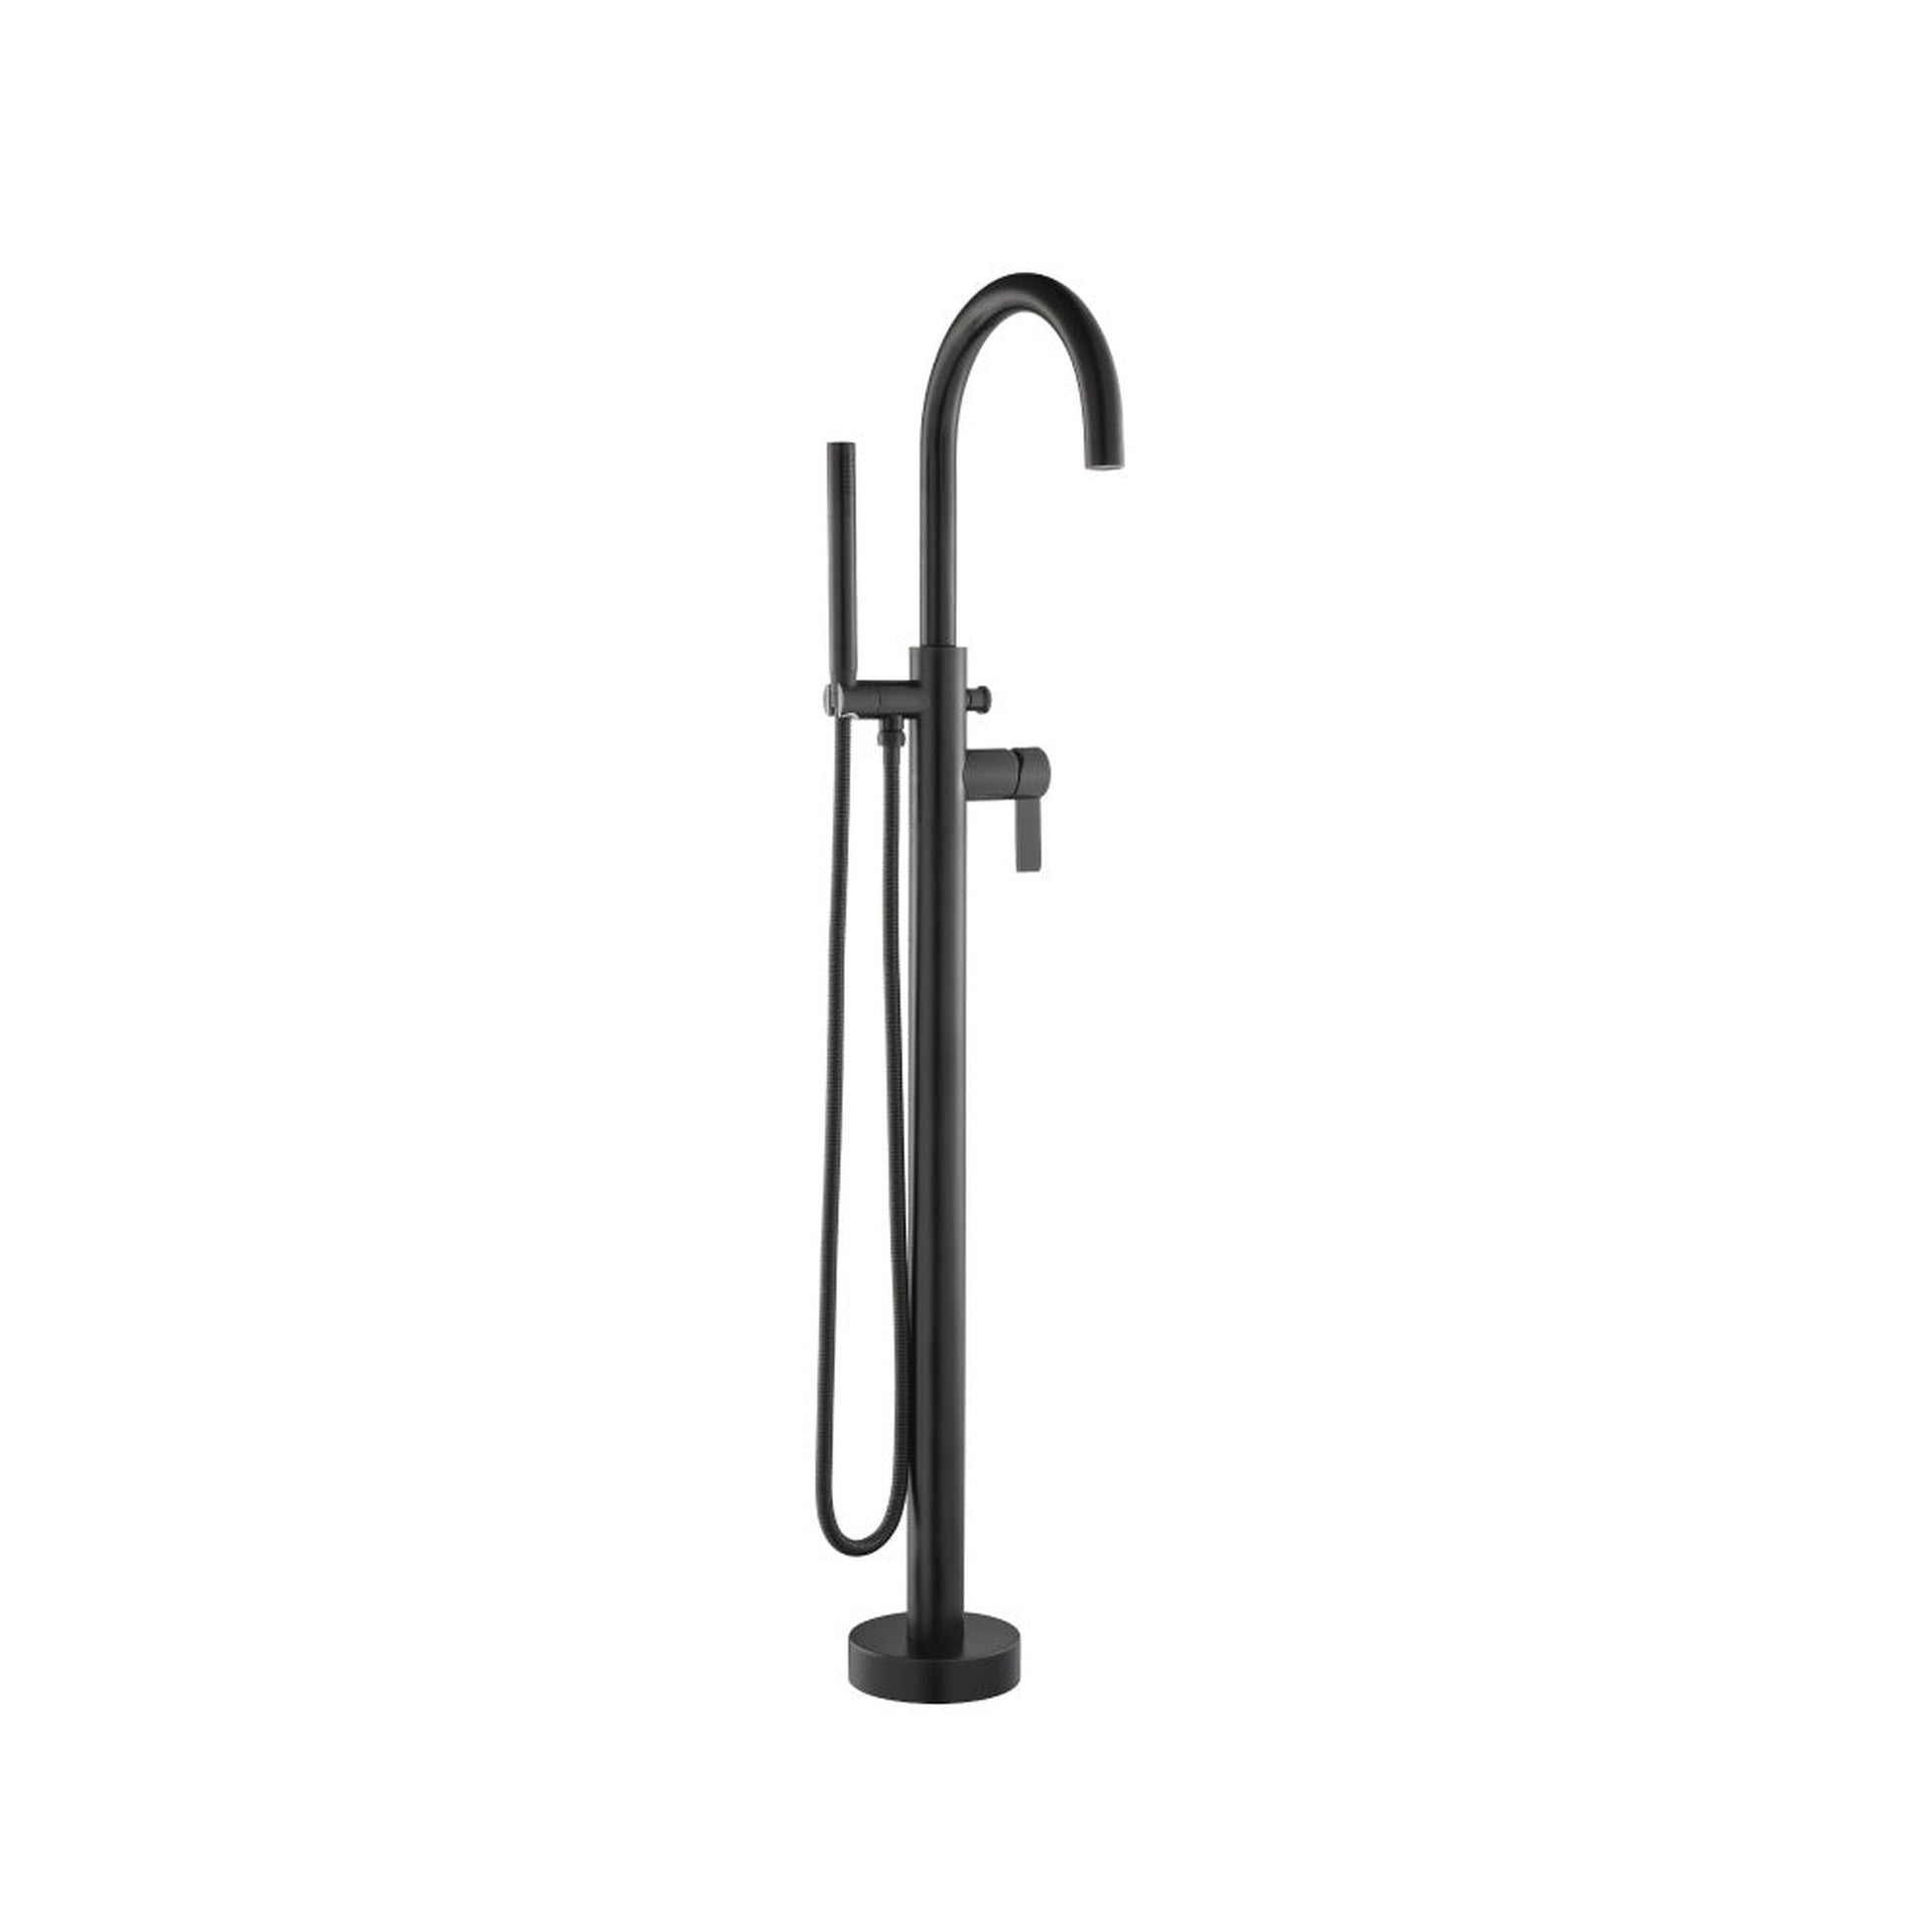 Isenberg Serie 145 Matte Black Freestanding Floor Mount Bathtub / Tub Filler With Hand Shower